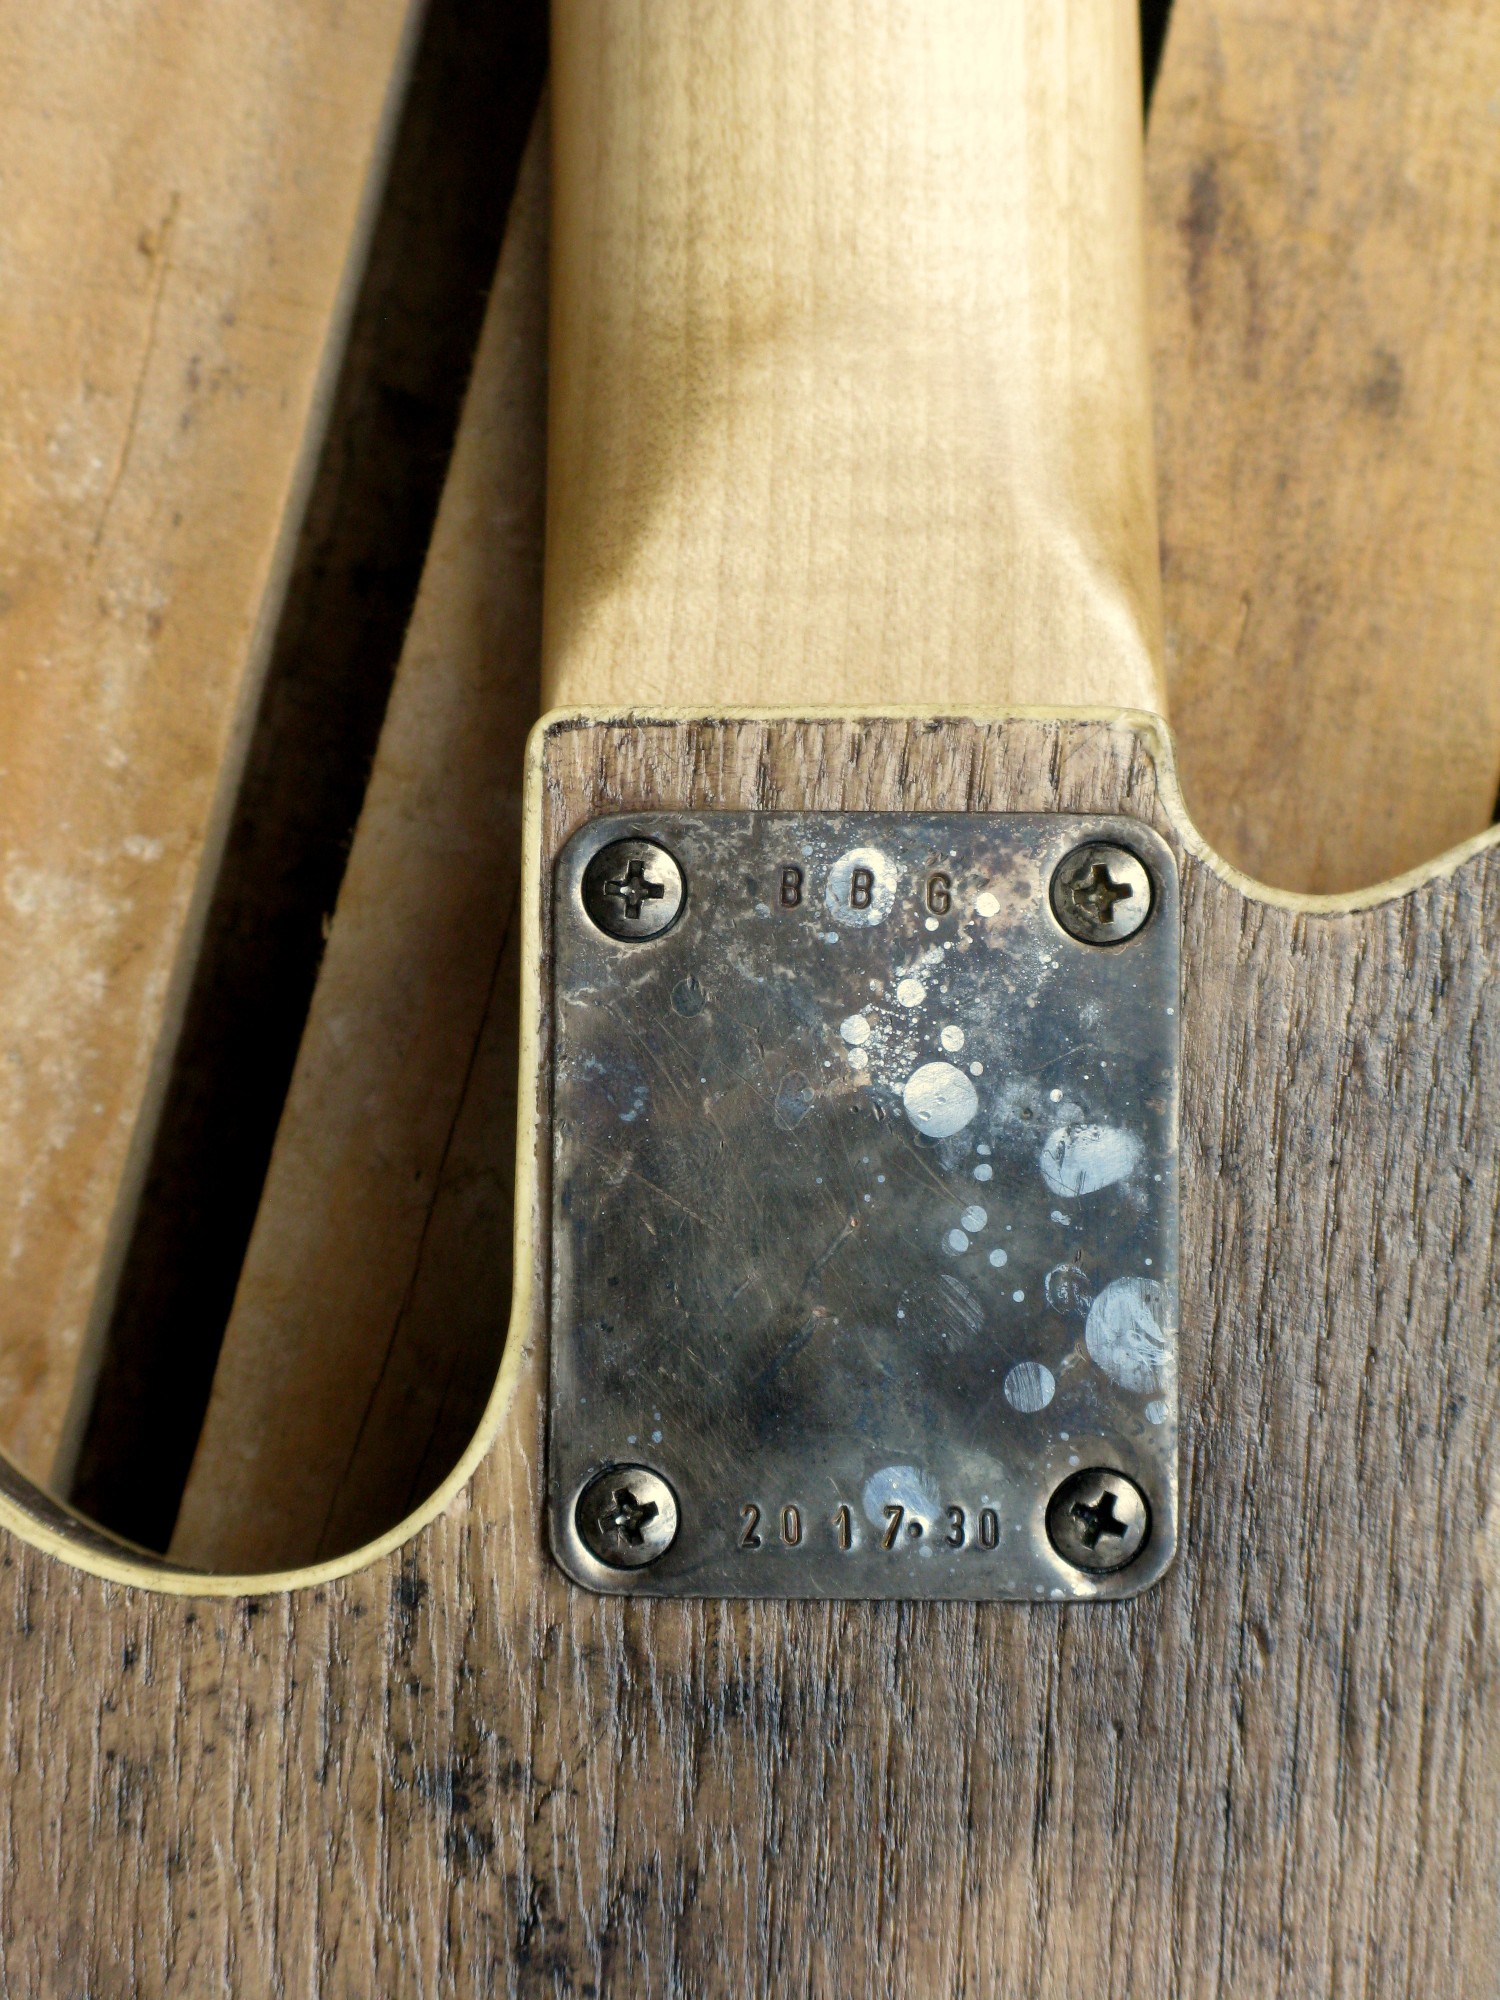 Retro del body di una chitarra elettrica baritono modello Telecaster con top ricavato da una vecchia cassetta di polvere da sparo